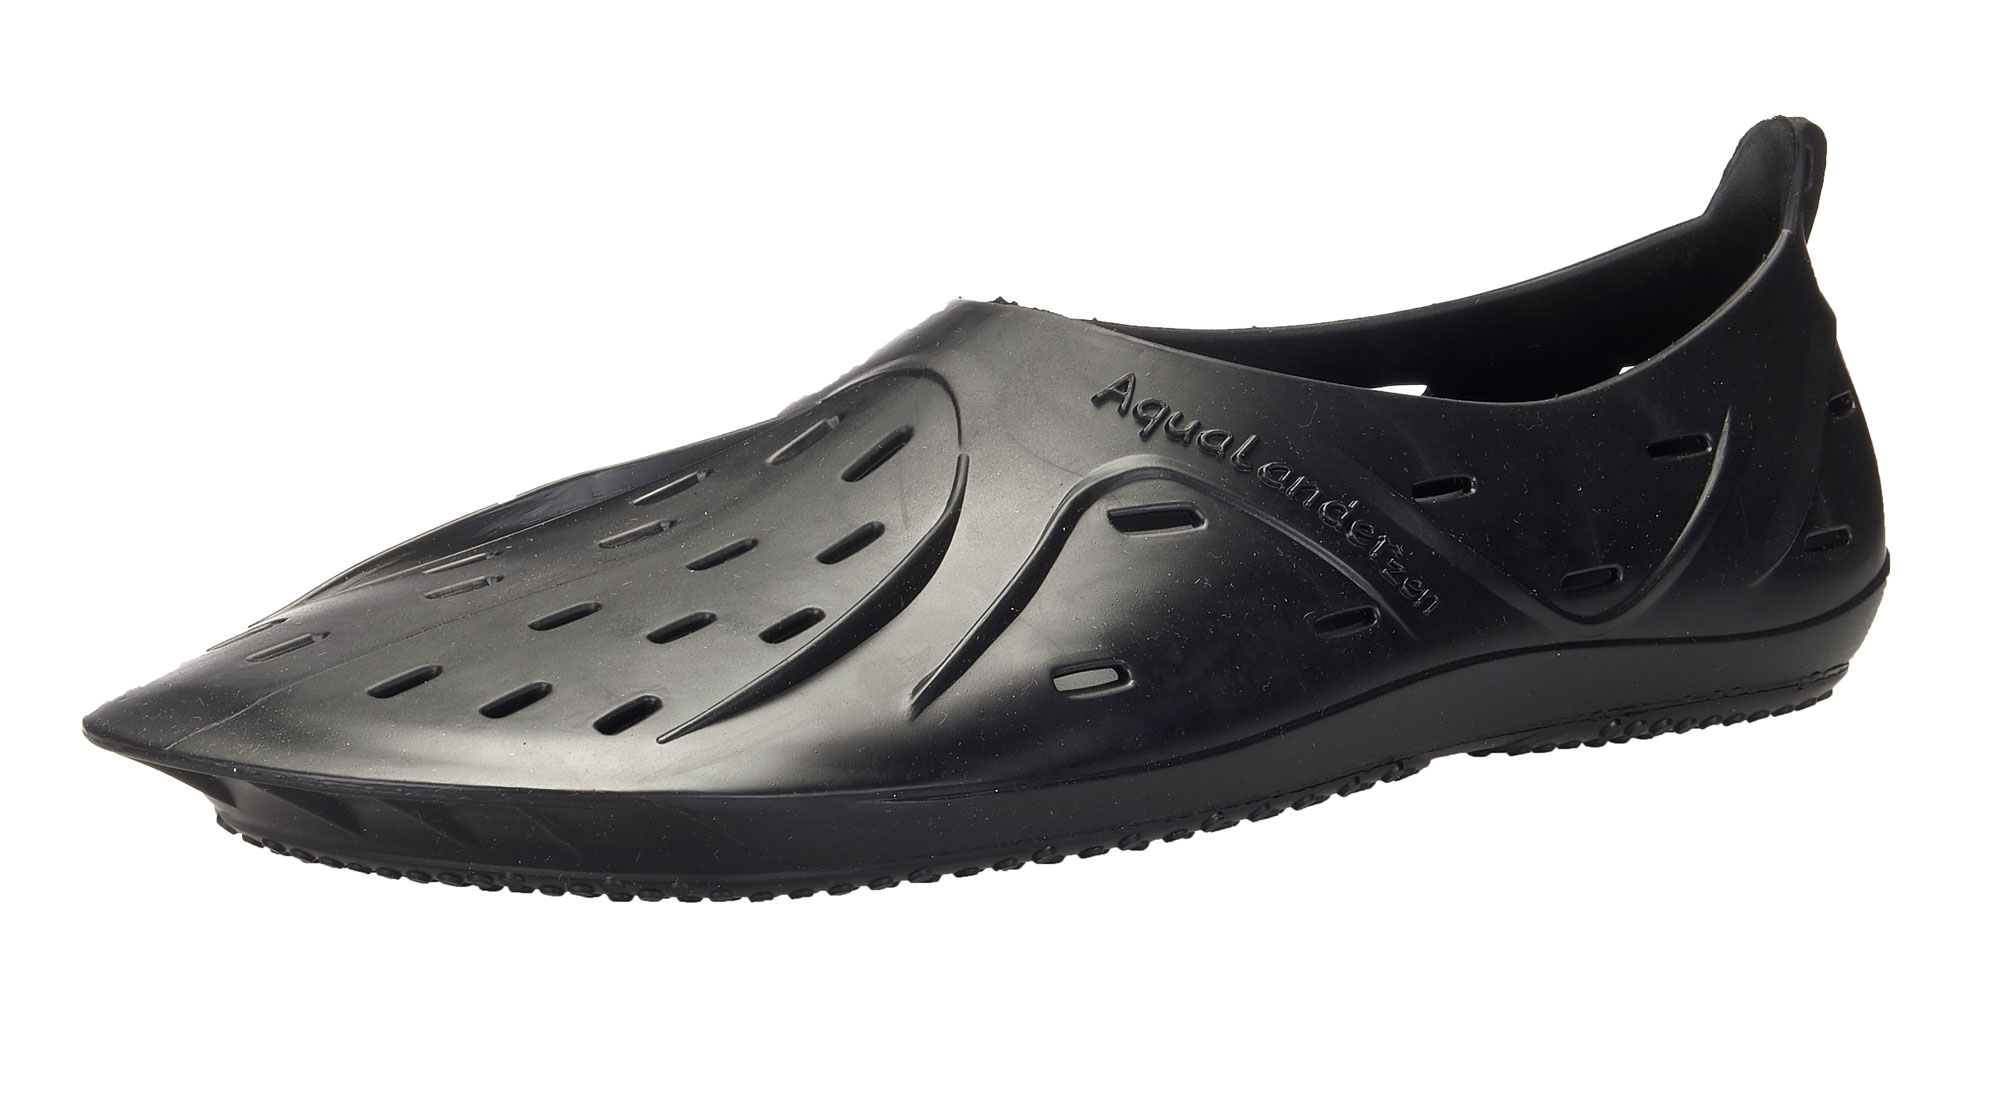 BALLOP Schuhe "Aqua Fit Voyager black" Wasserschuhe Badeschuhe Barfußschuhe 